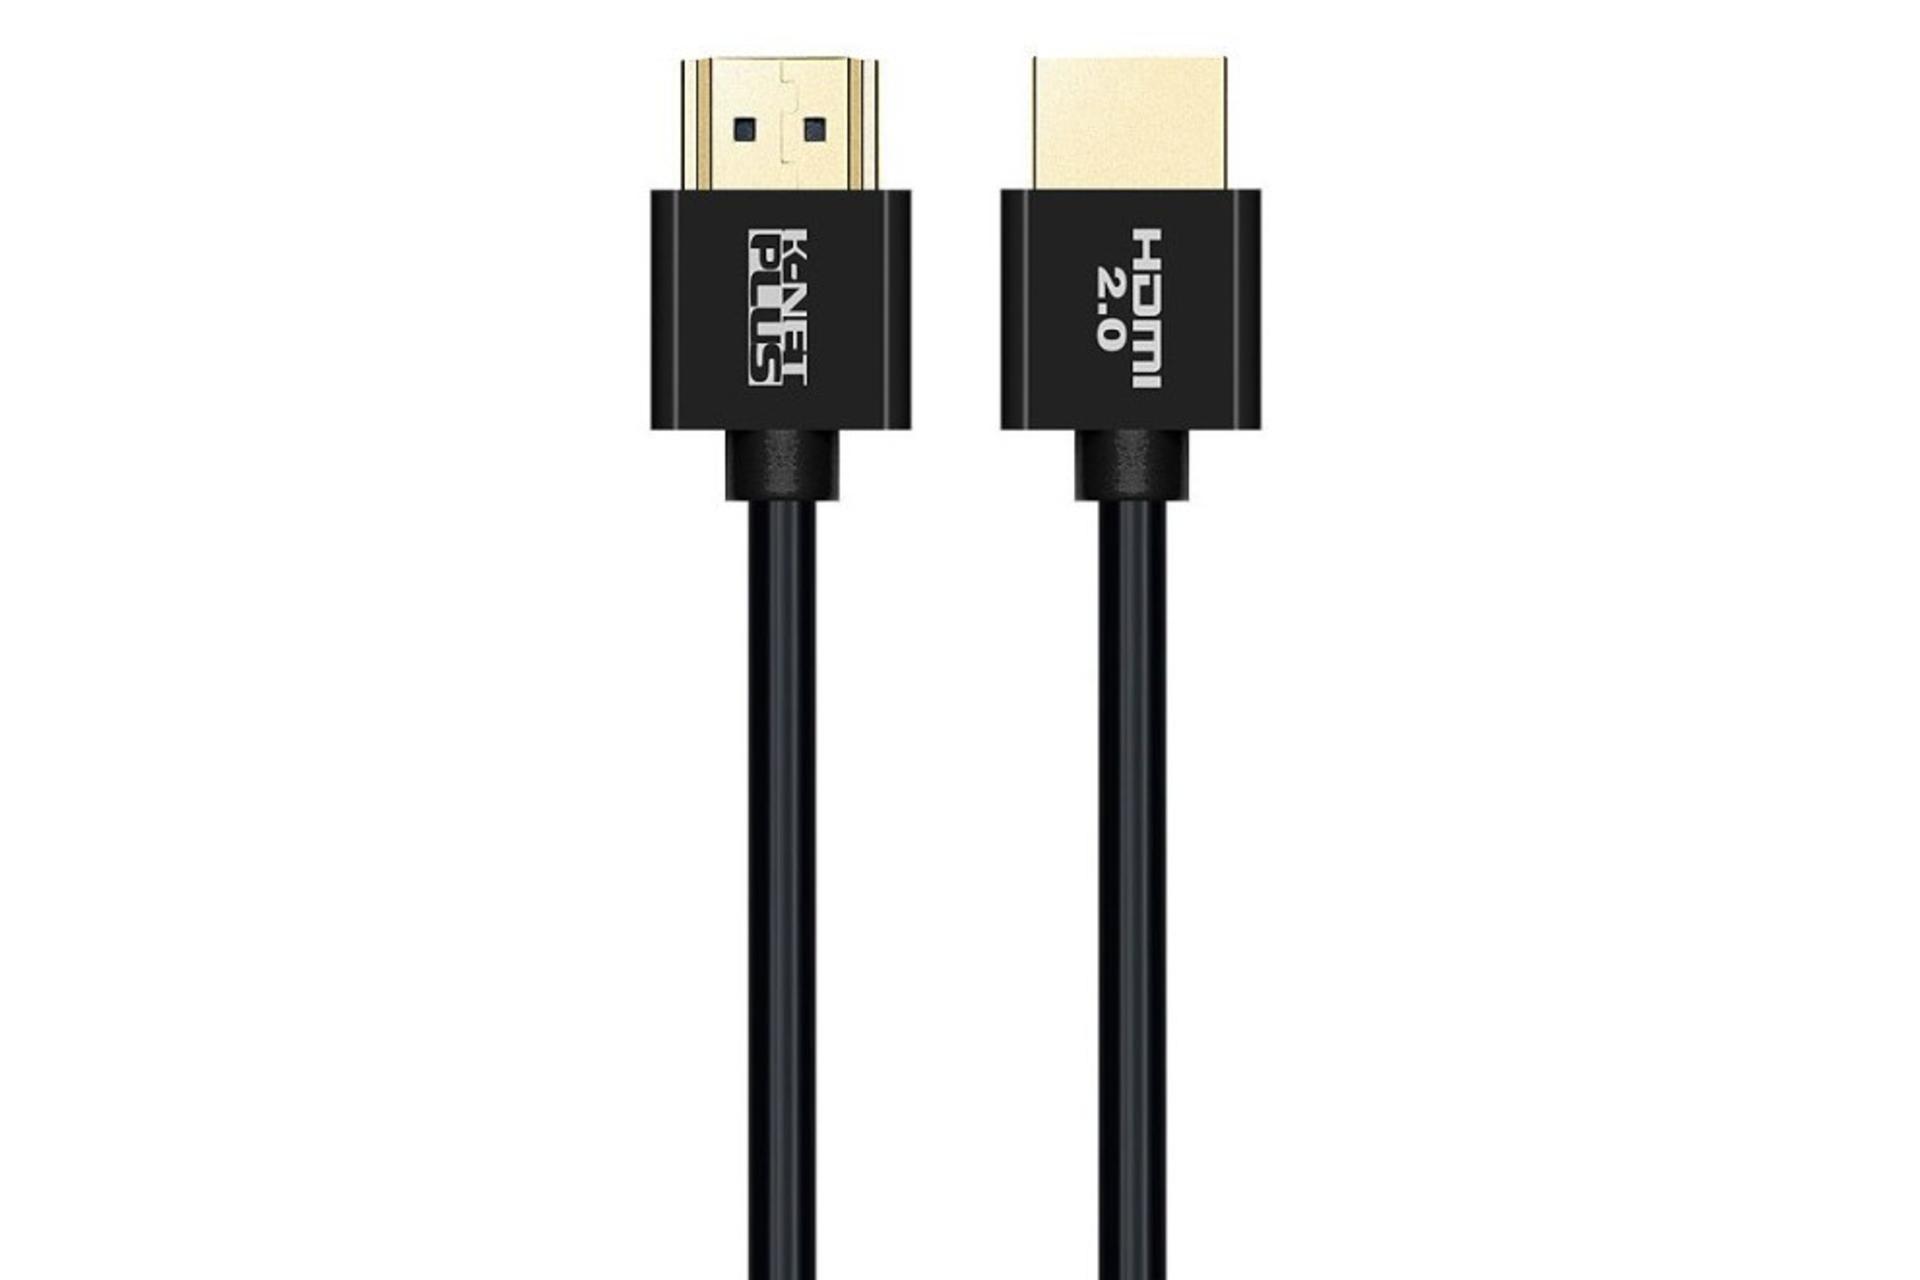 کابل HDMI نسخه 2.0 کی نت پلاس K-Net Plus Super Slim KP-HC176 4K 60Hz با طول 1.8 متر مشکی